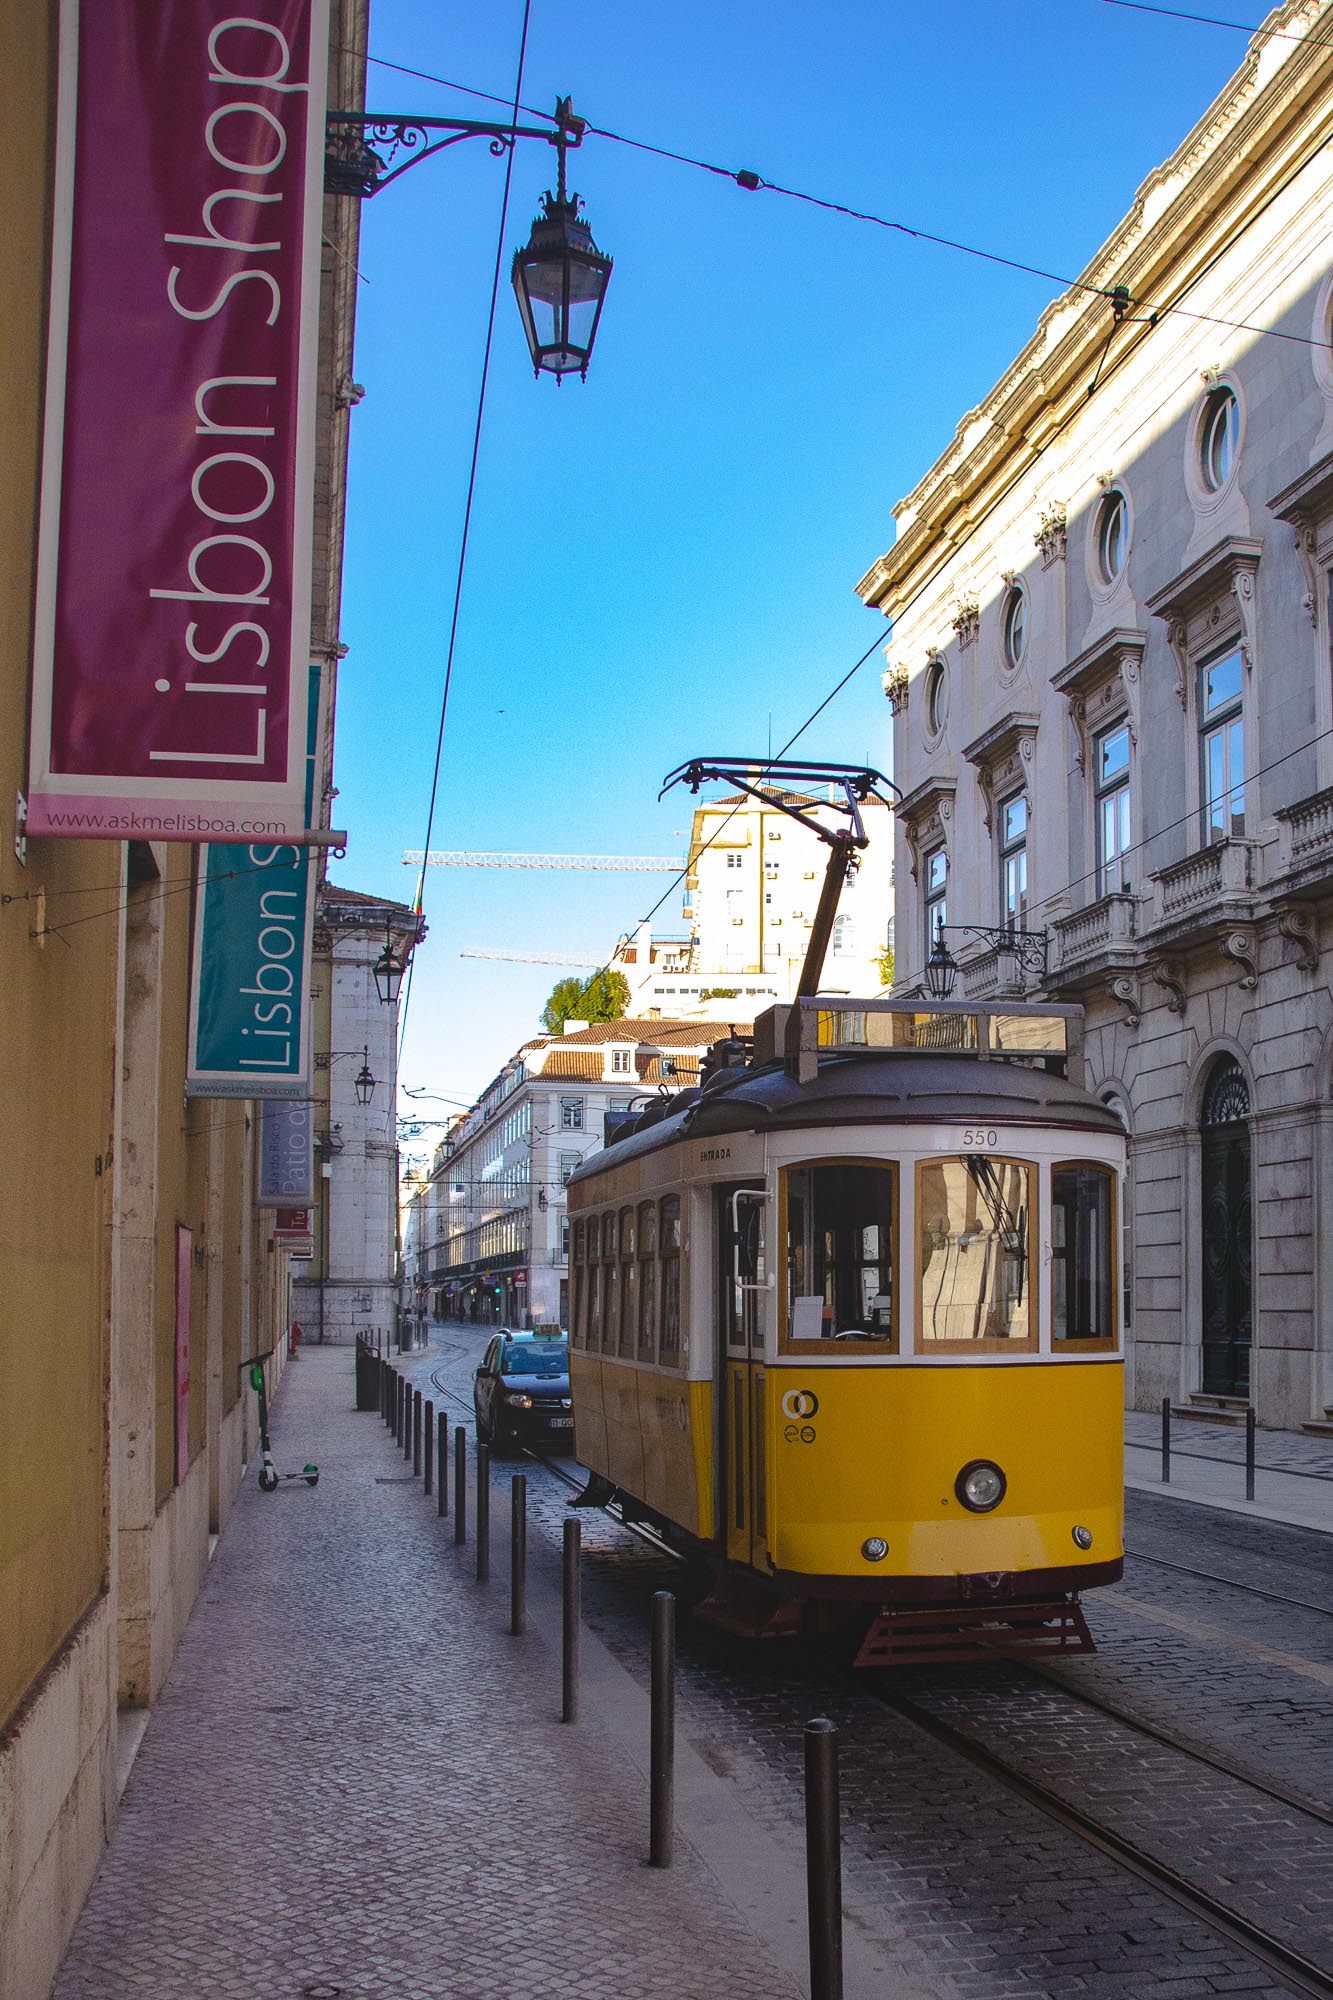 ollo / Lissabon in einem Blick